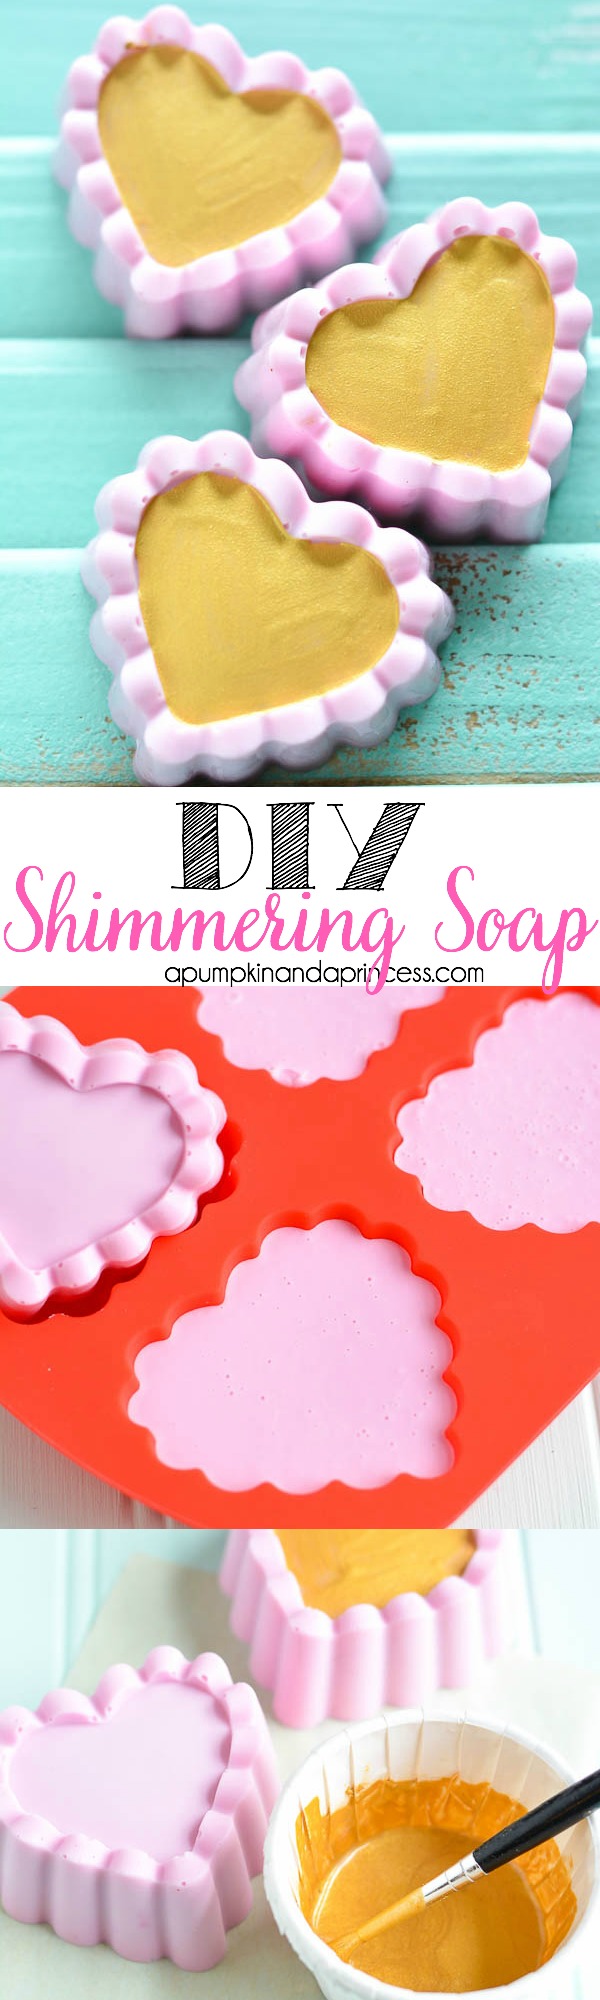 DIY-Shimmer-Soap-Tutorial